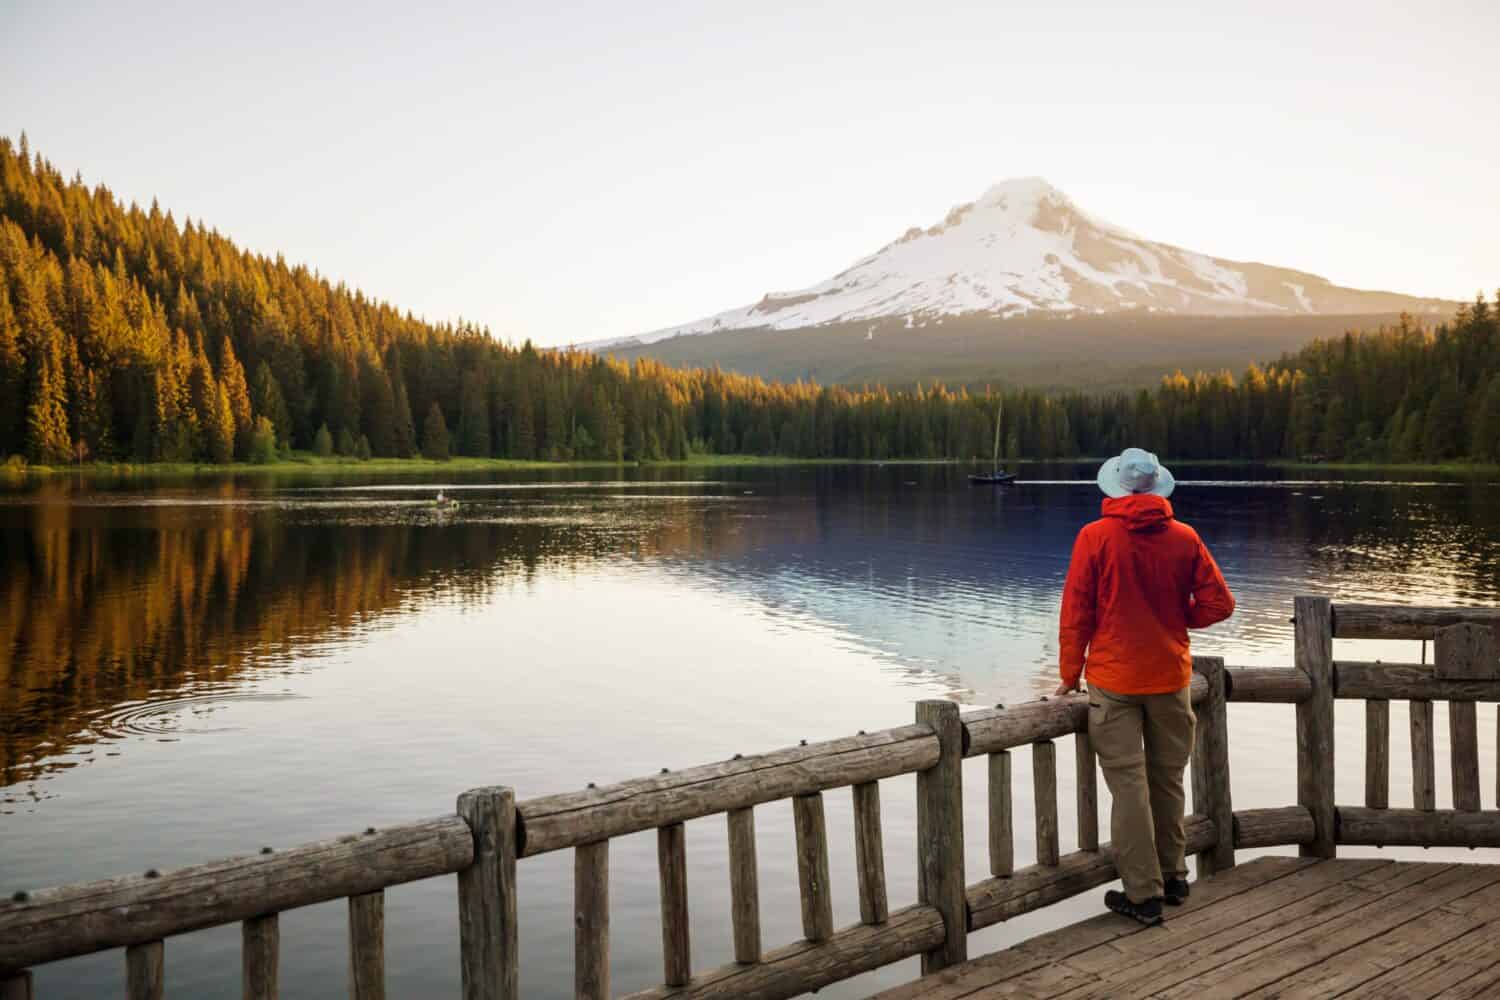 Montare.  Cofano riflesso nel lago Trillium, Oregon, Stati Uniti d'America.  Bellissimi paesaggi naturali